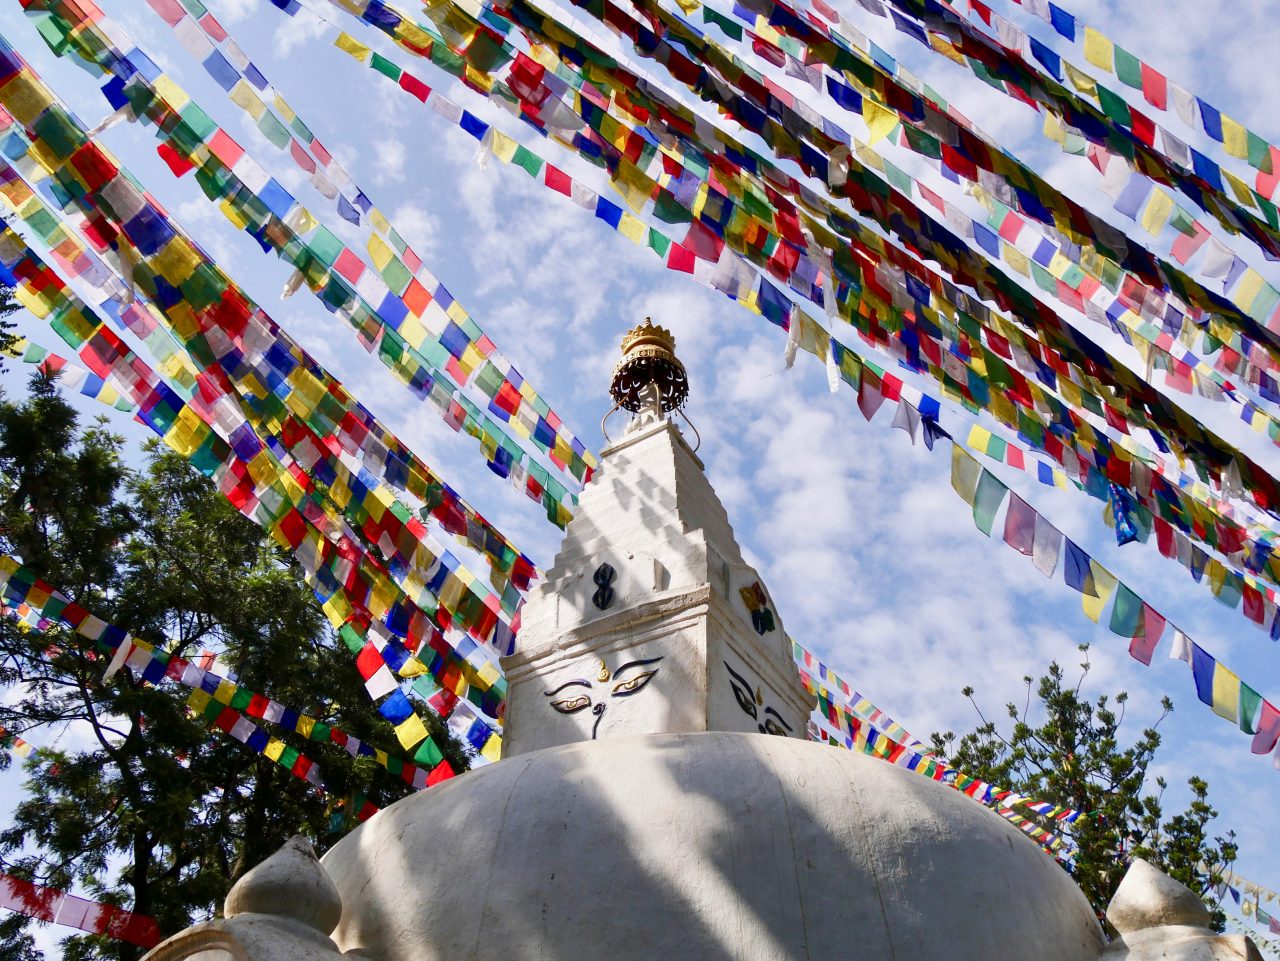 Swayambunath, Kathmandu, Nepal